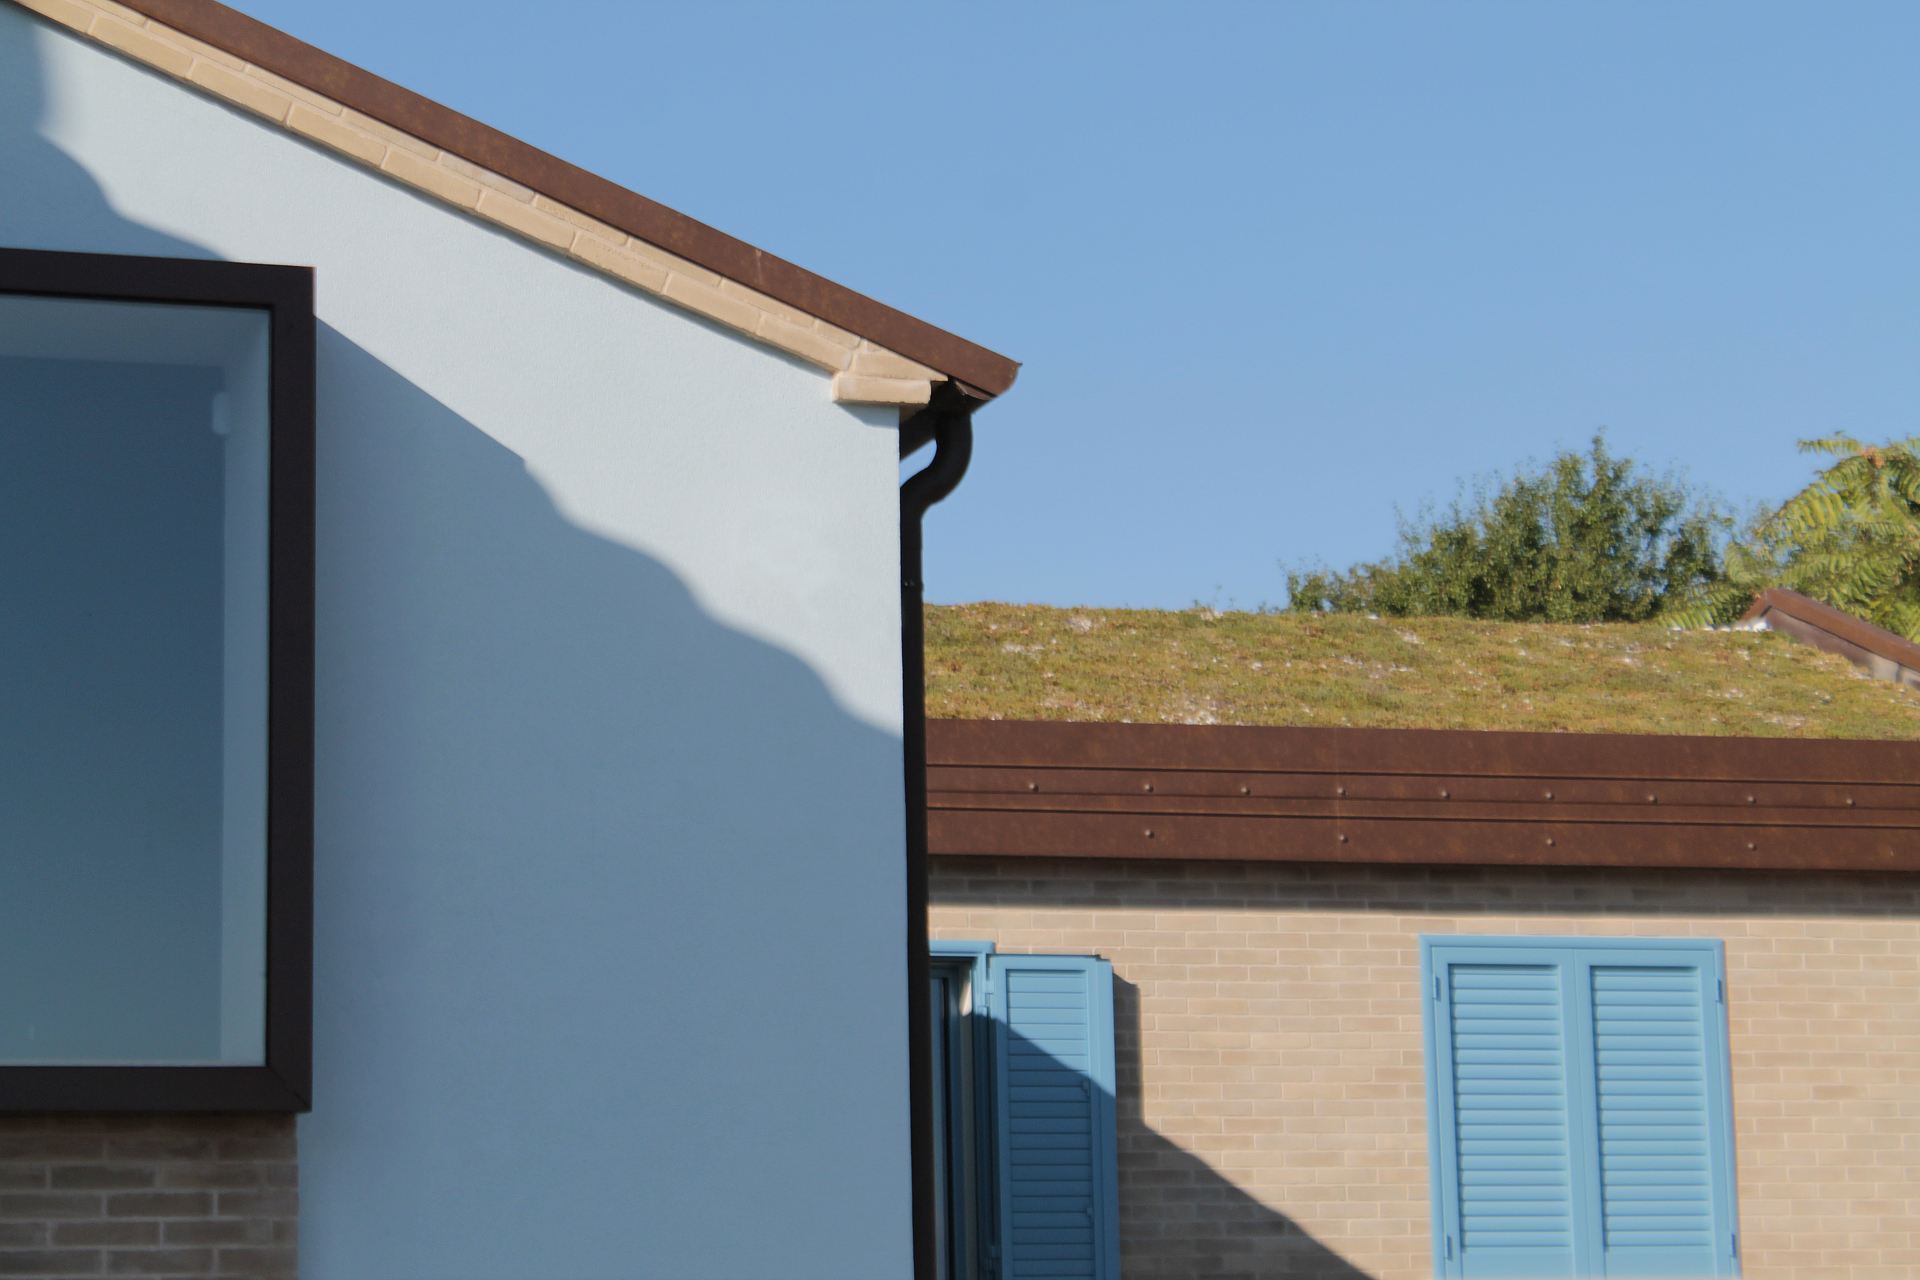 Casa di campagna - esterno - tetto giardino - finestra baywindow - intonaco azzurro e finestre blu - mattina di sole